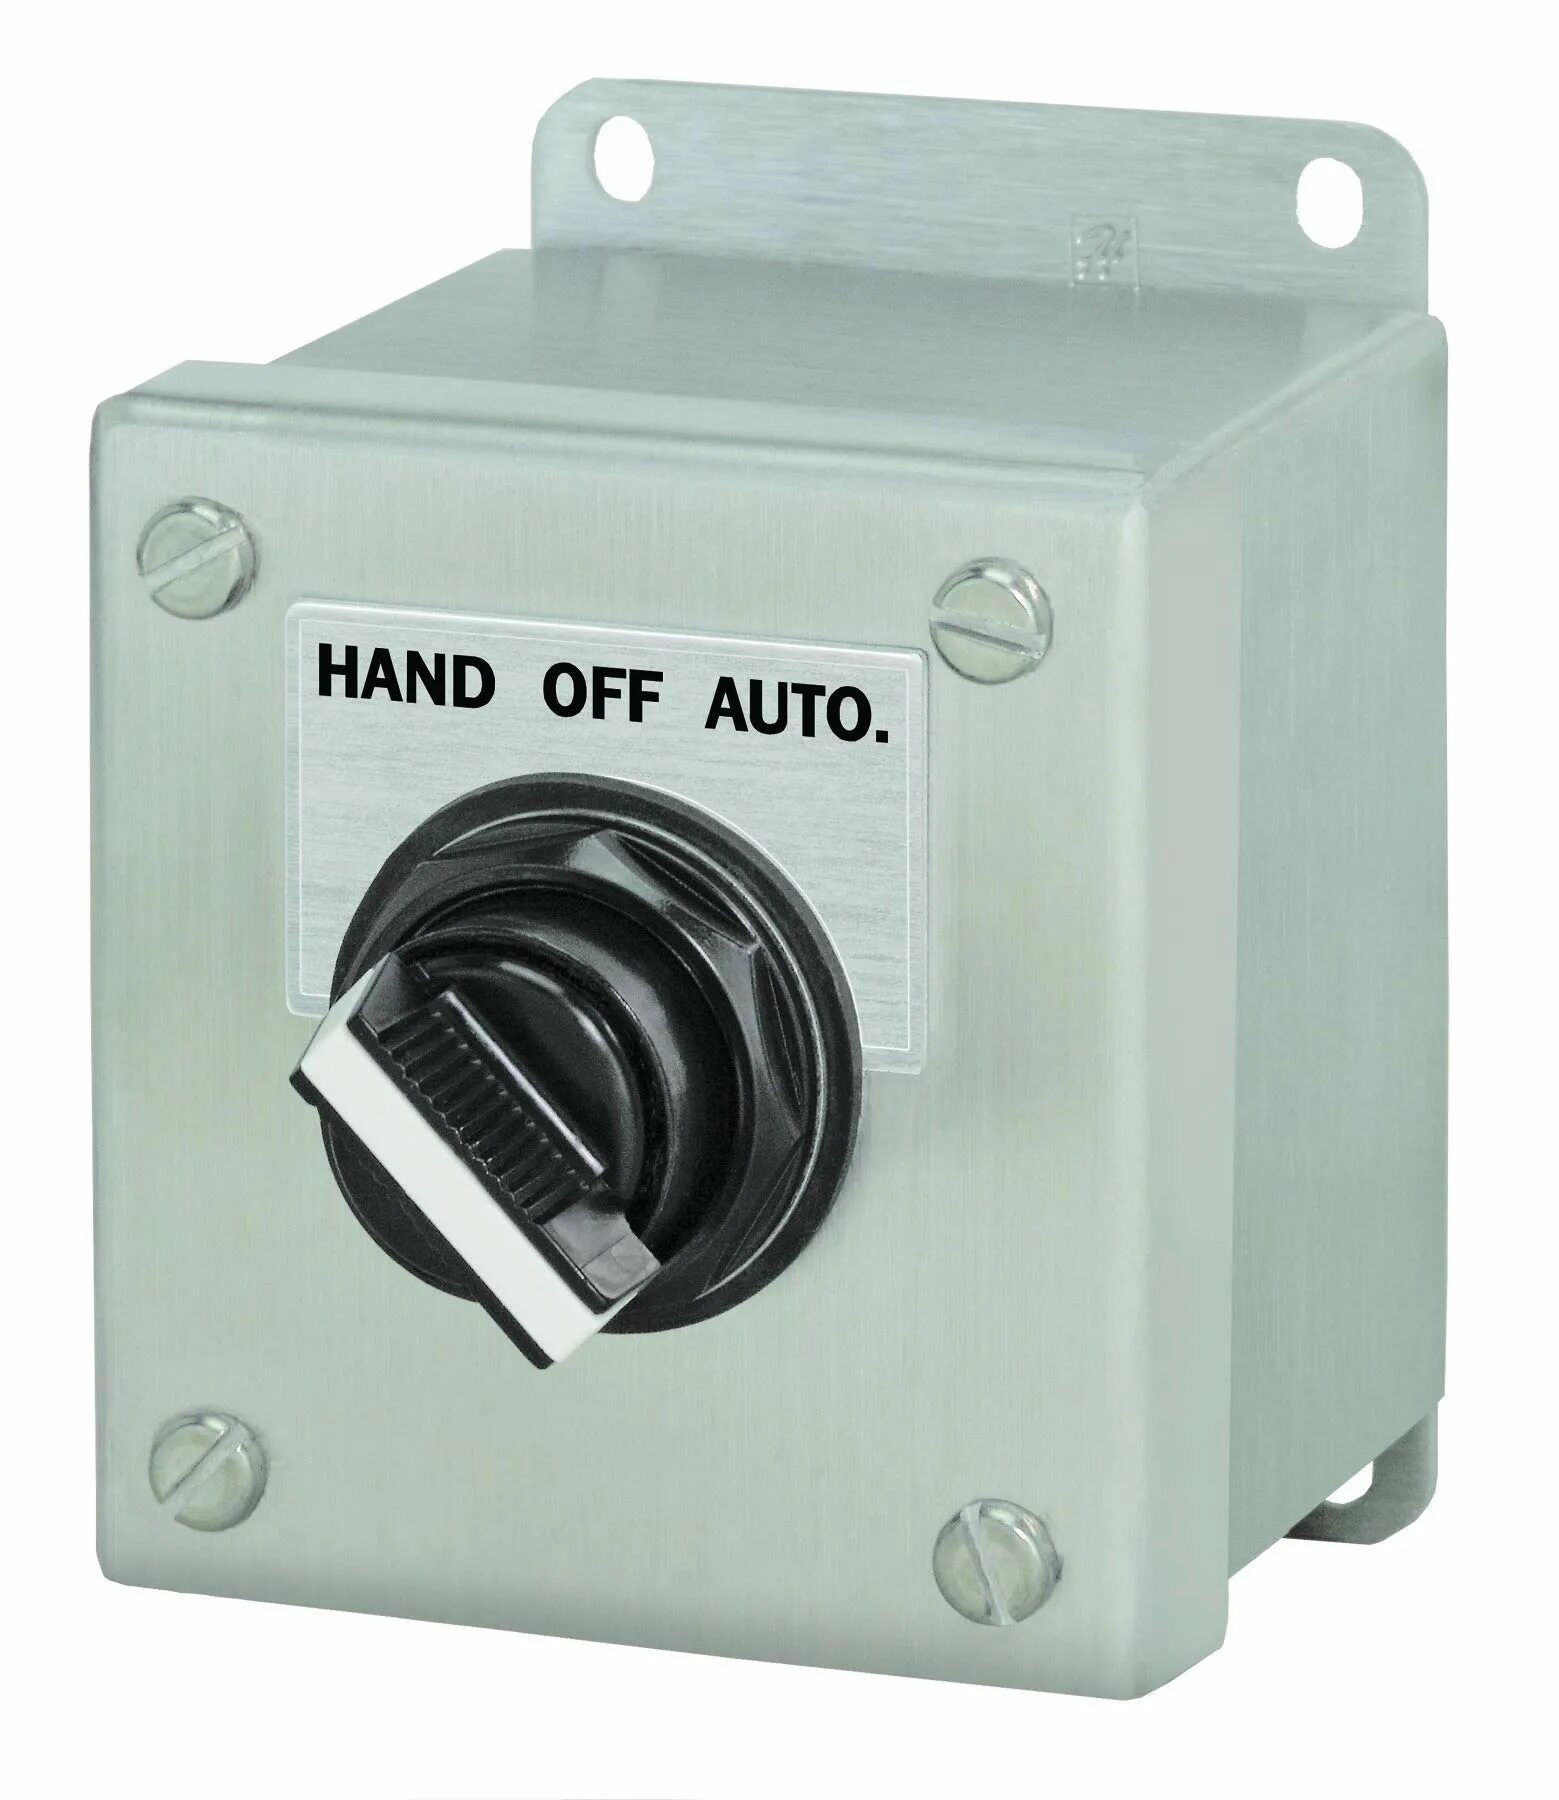 Automatic off. Выключатель трёхполюсный 3066/2/380v-2xz14 (ip56). Switch NC C. Auto off hand Switch. Выключатель s336 f Keyswitch Unit.